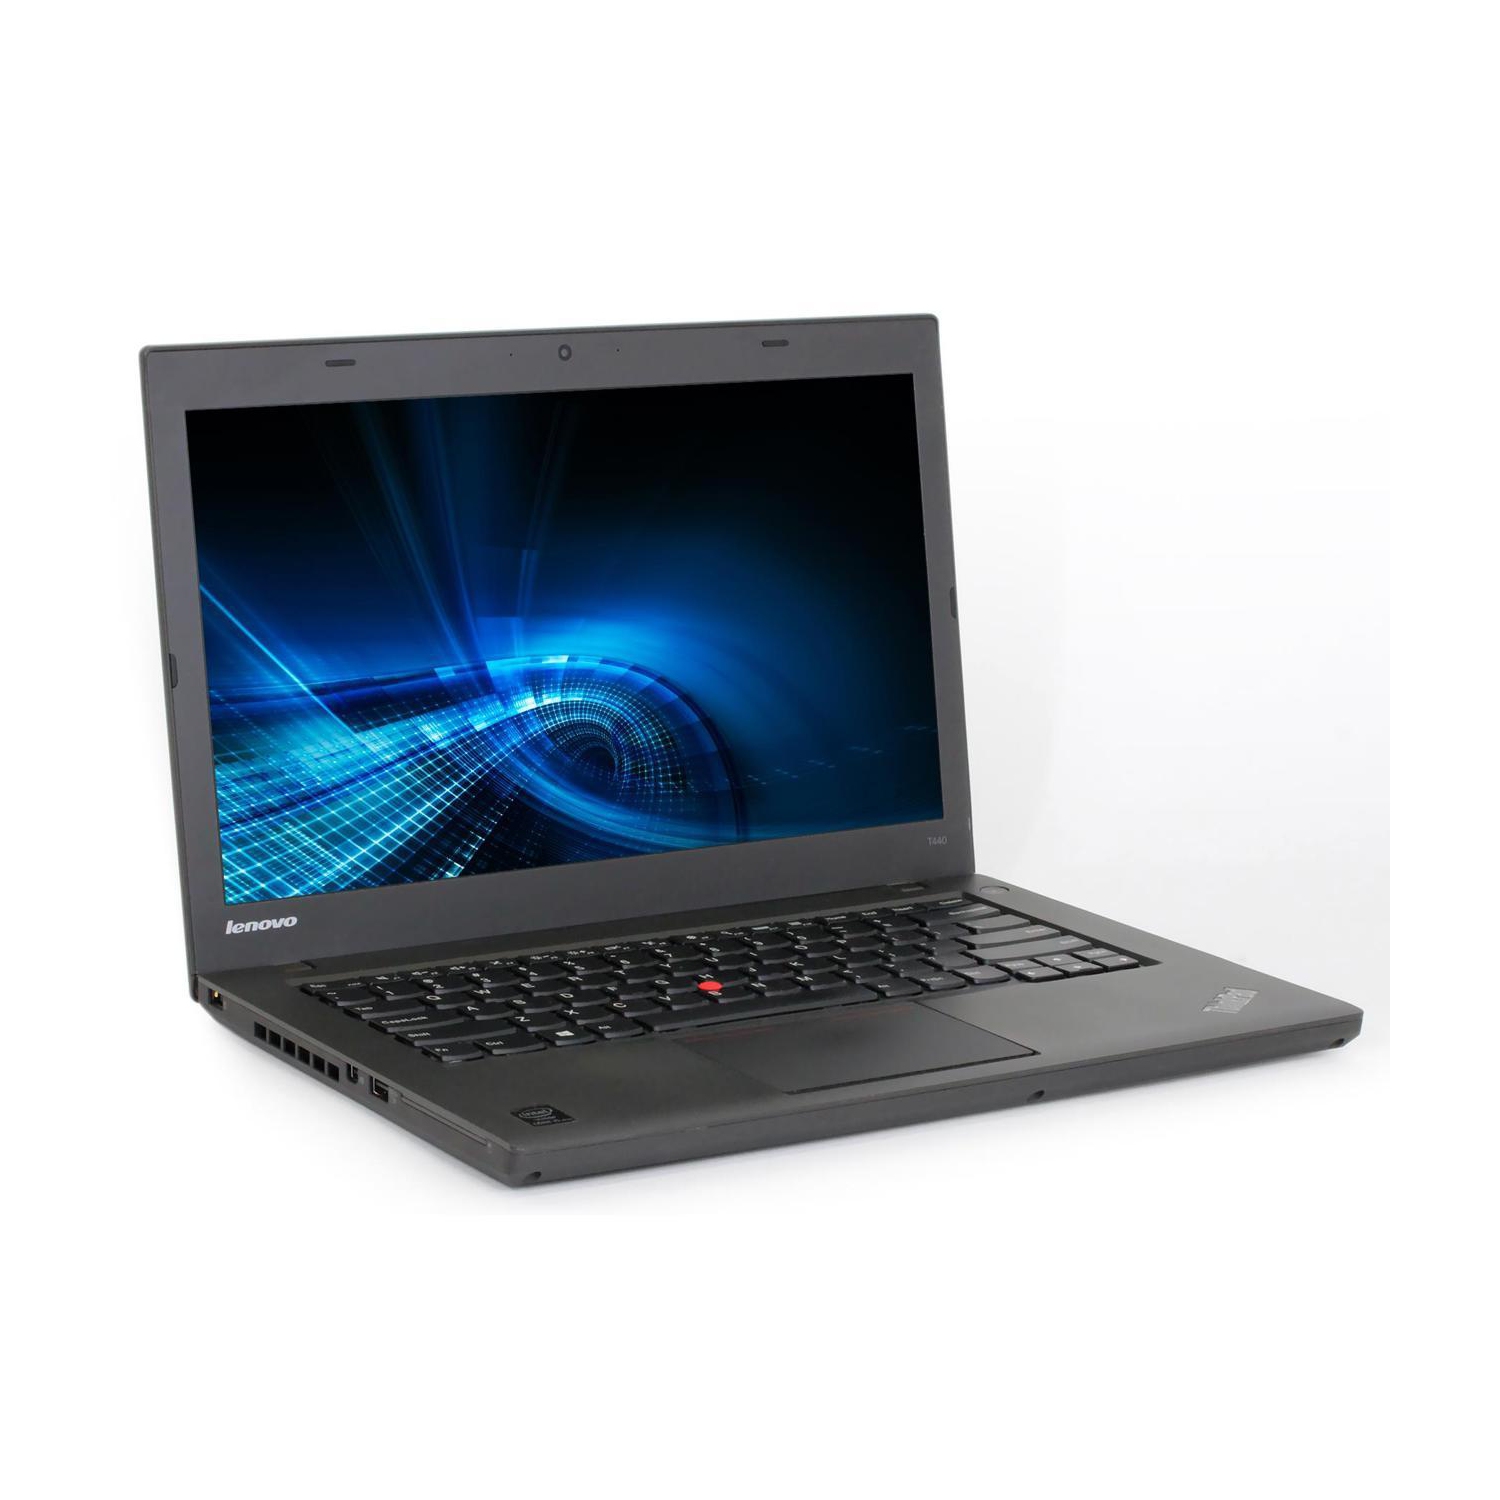 Refurbished (Good) - Lenovo Thinkpad T440 Ultrabook Laptop 14" i7-4600U @2.1GHz 8GB RAM New 1TB SSD Win 10 Pro